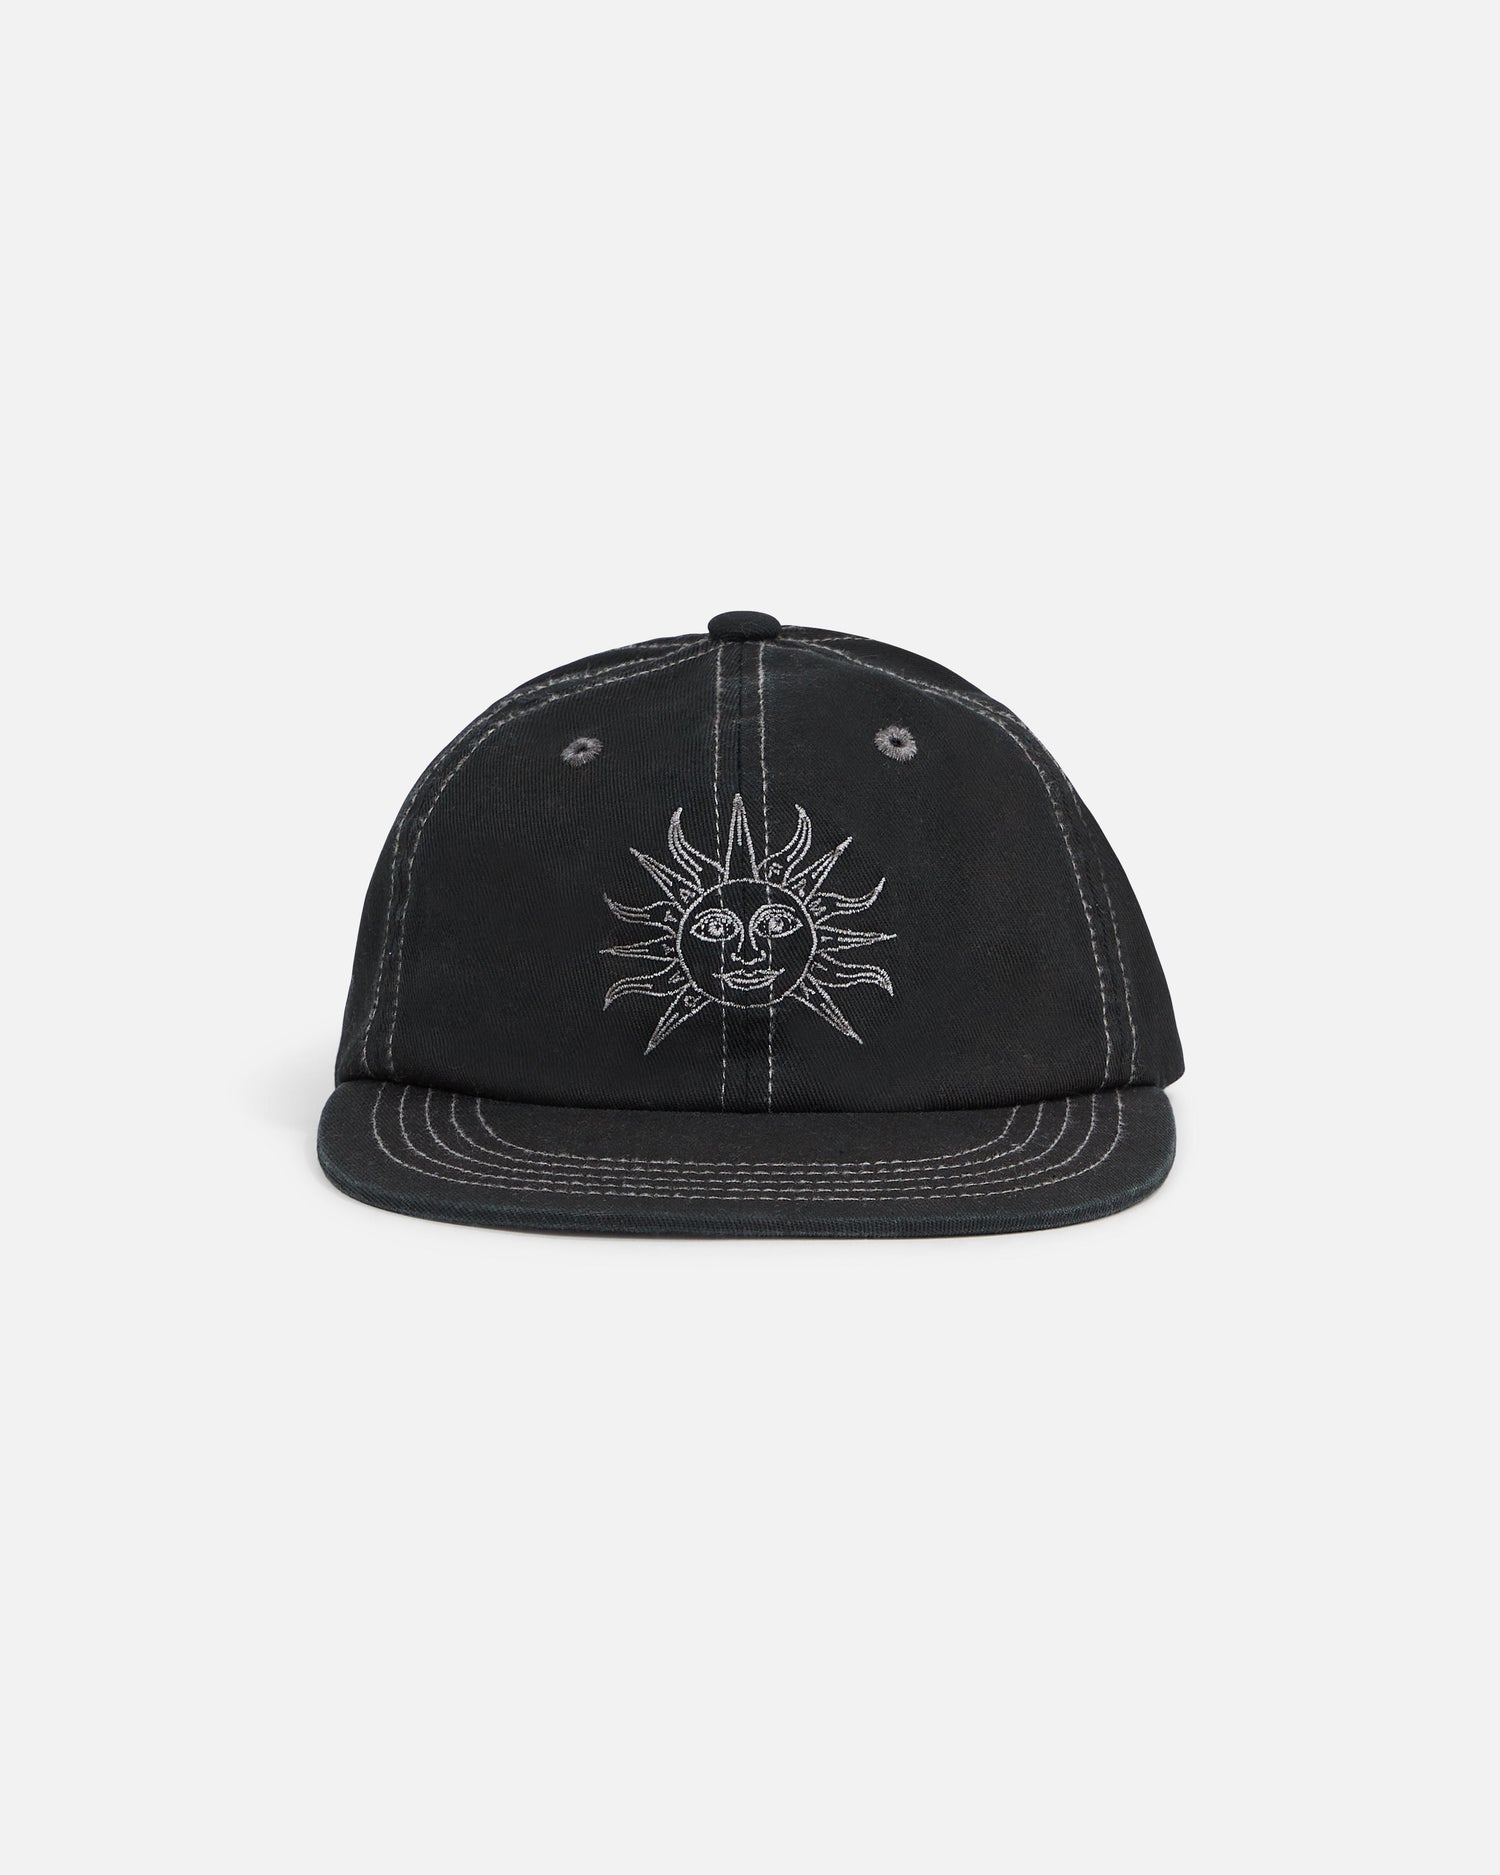 Patta Black Sun Sports Cap (Pirate Black)